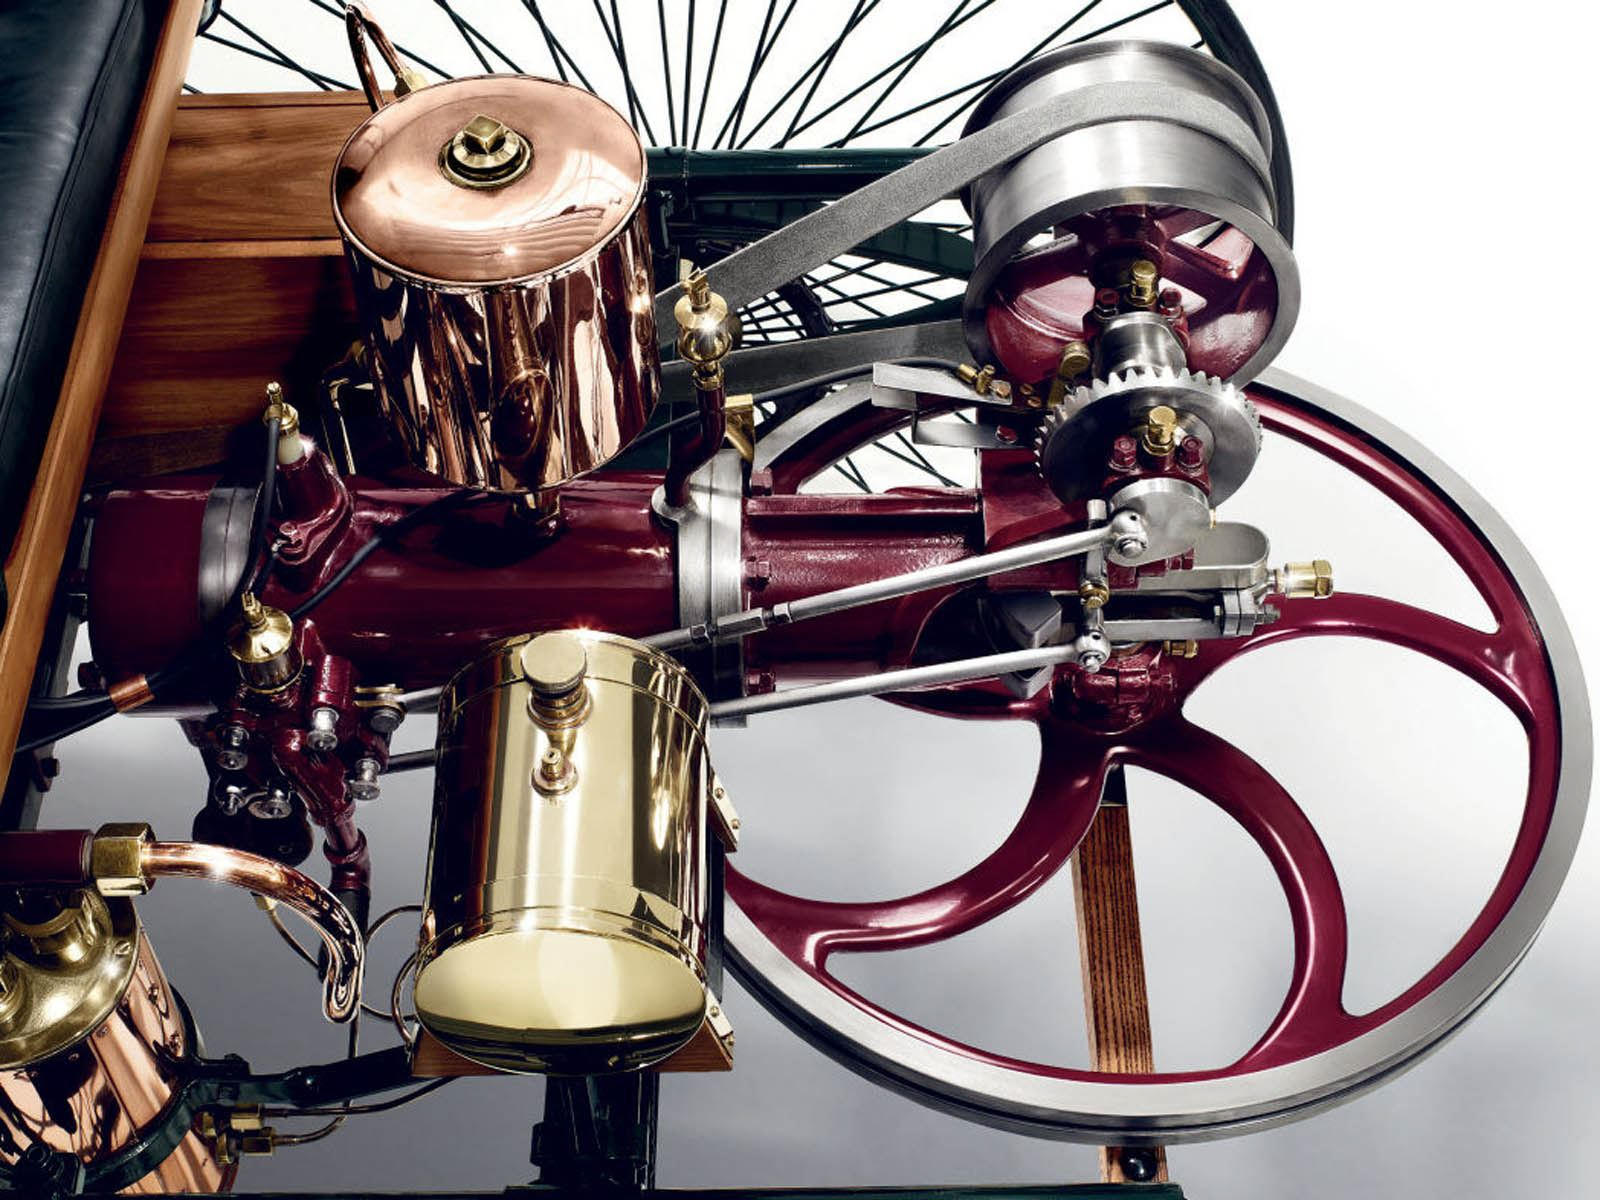 Первый автомобиль с двигателем сгорания. Benz Patent-Motorwagen 1886. Benz Patent-Motorwagen двигатель. Мерседес Бенц патент Моторваген.